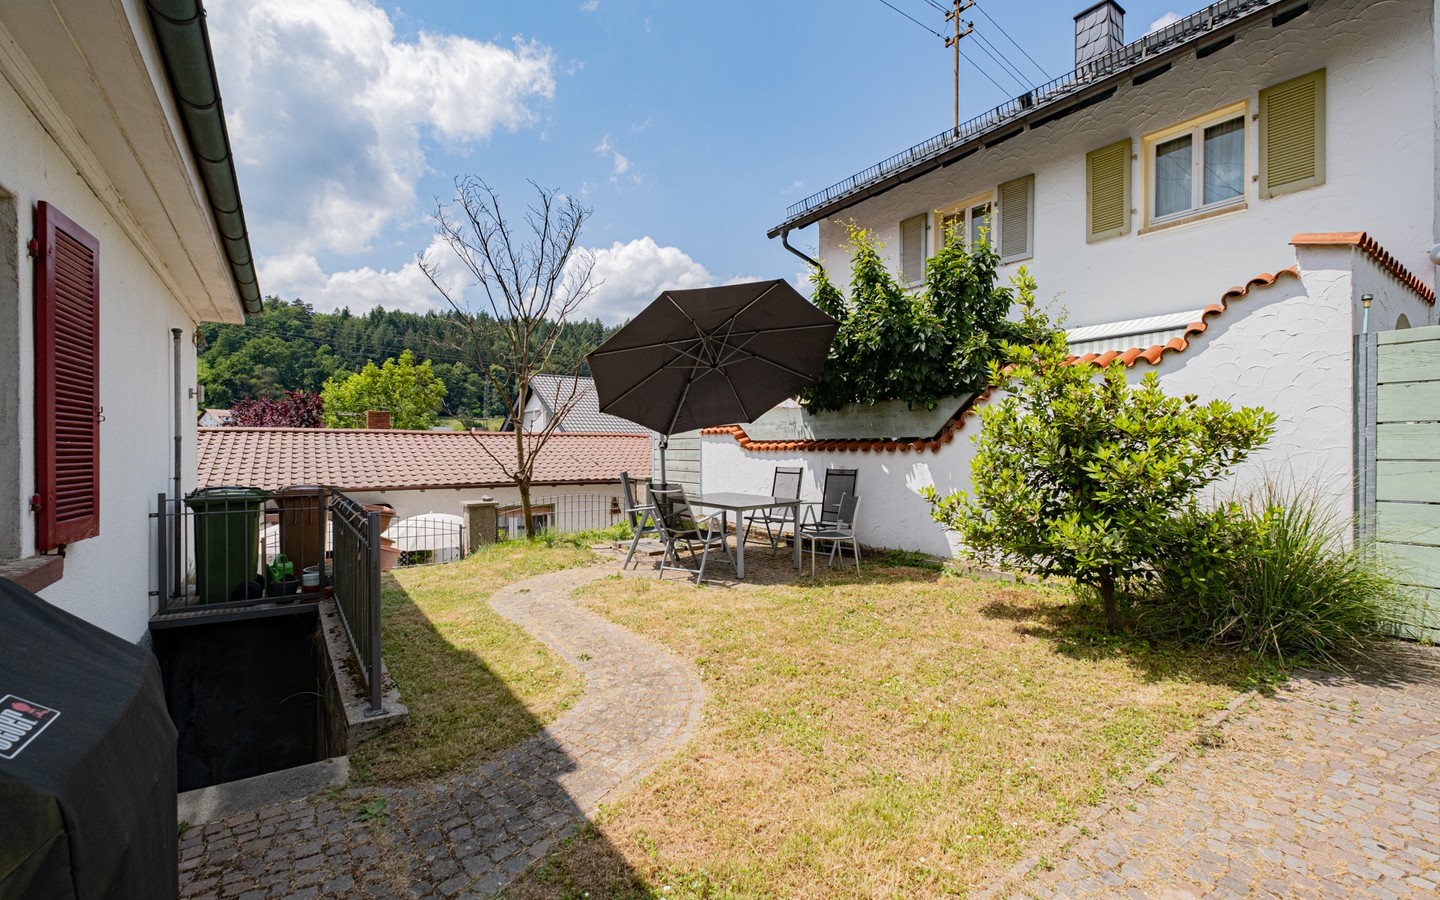 Terrasse - Ein Haus zum Verlieben: freistehendes EFH im Landhausstil in ruhiger Wohnlage von Mückenloch